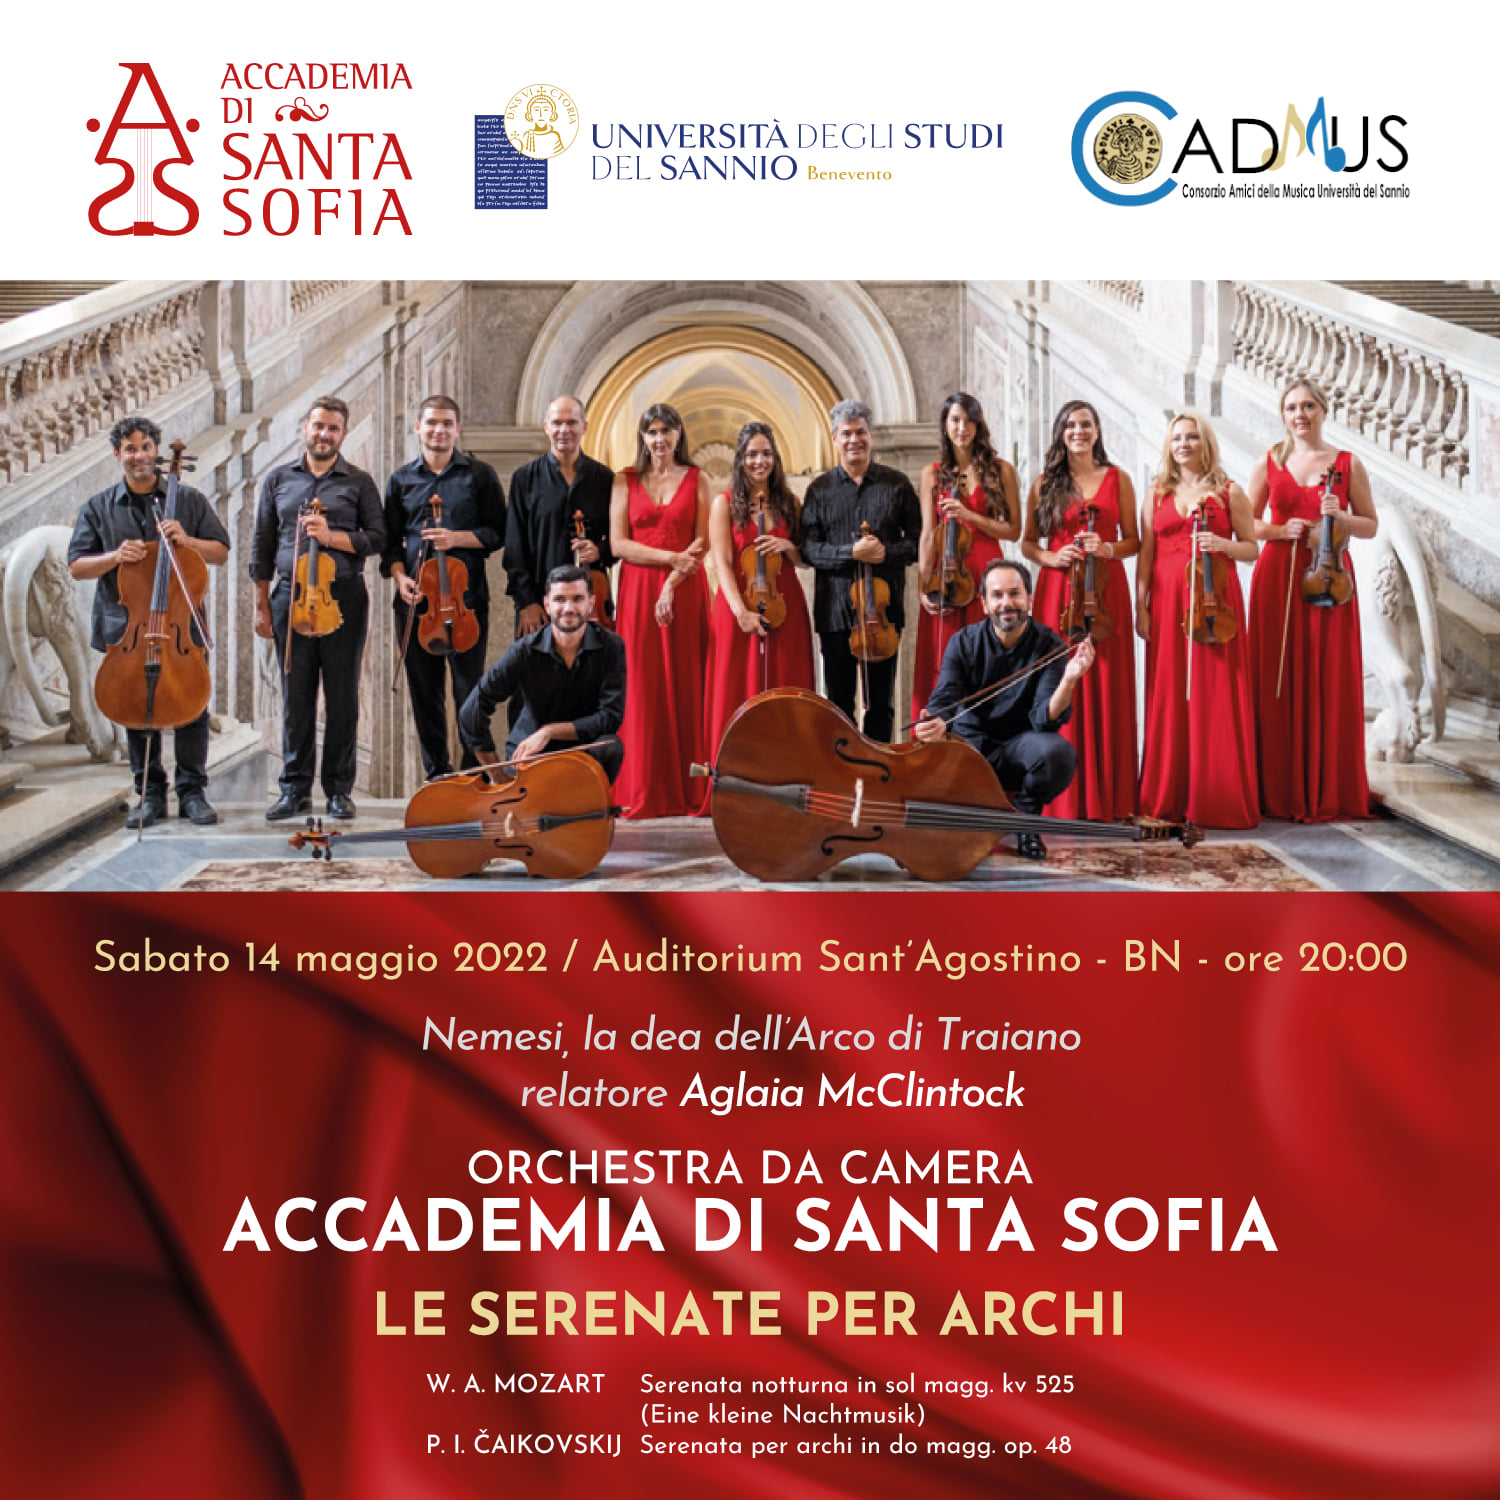 Accademia di Santa Sofia, sabato appuntamento con “Le serenate per archi”